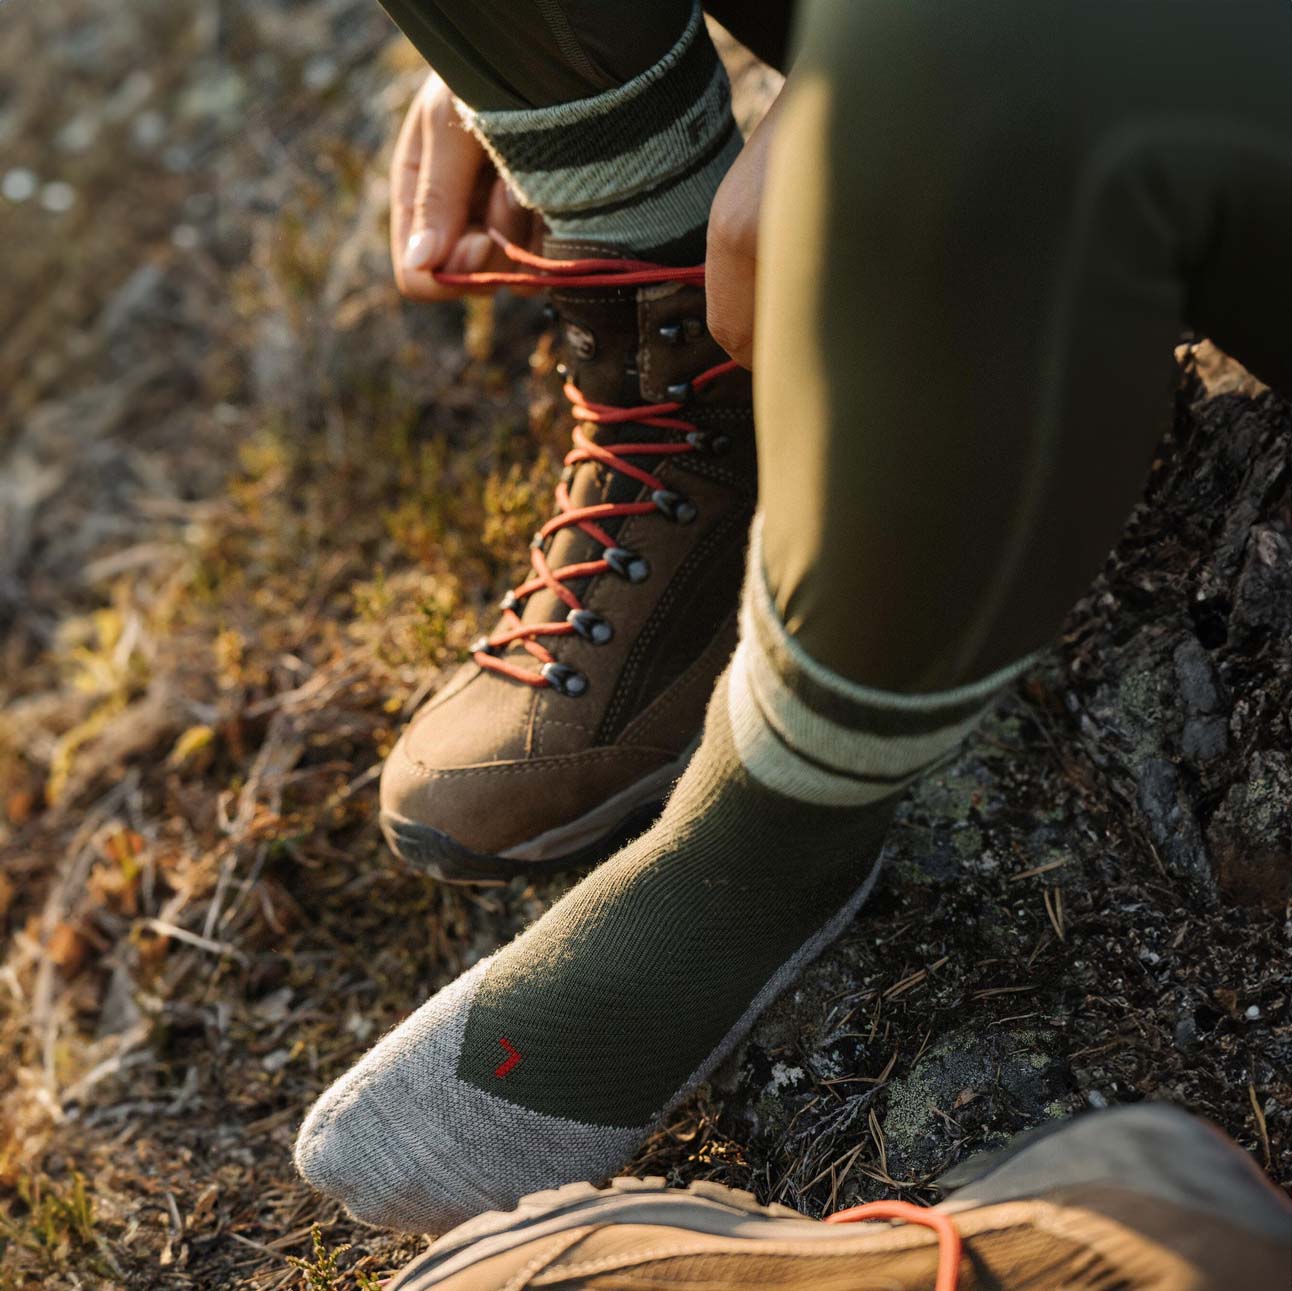 Falke TK Stabilizing Women's Hiking/Trekking Socks